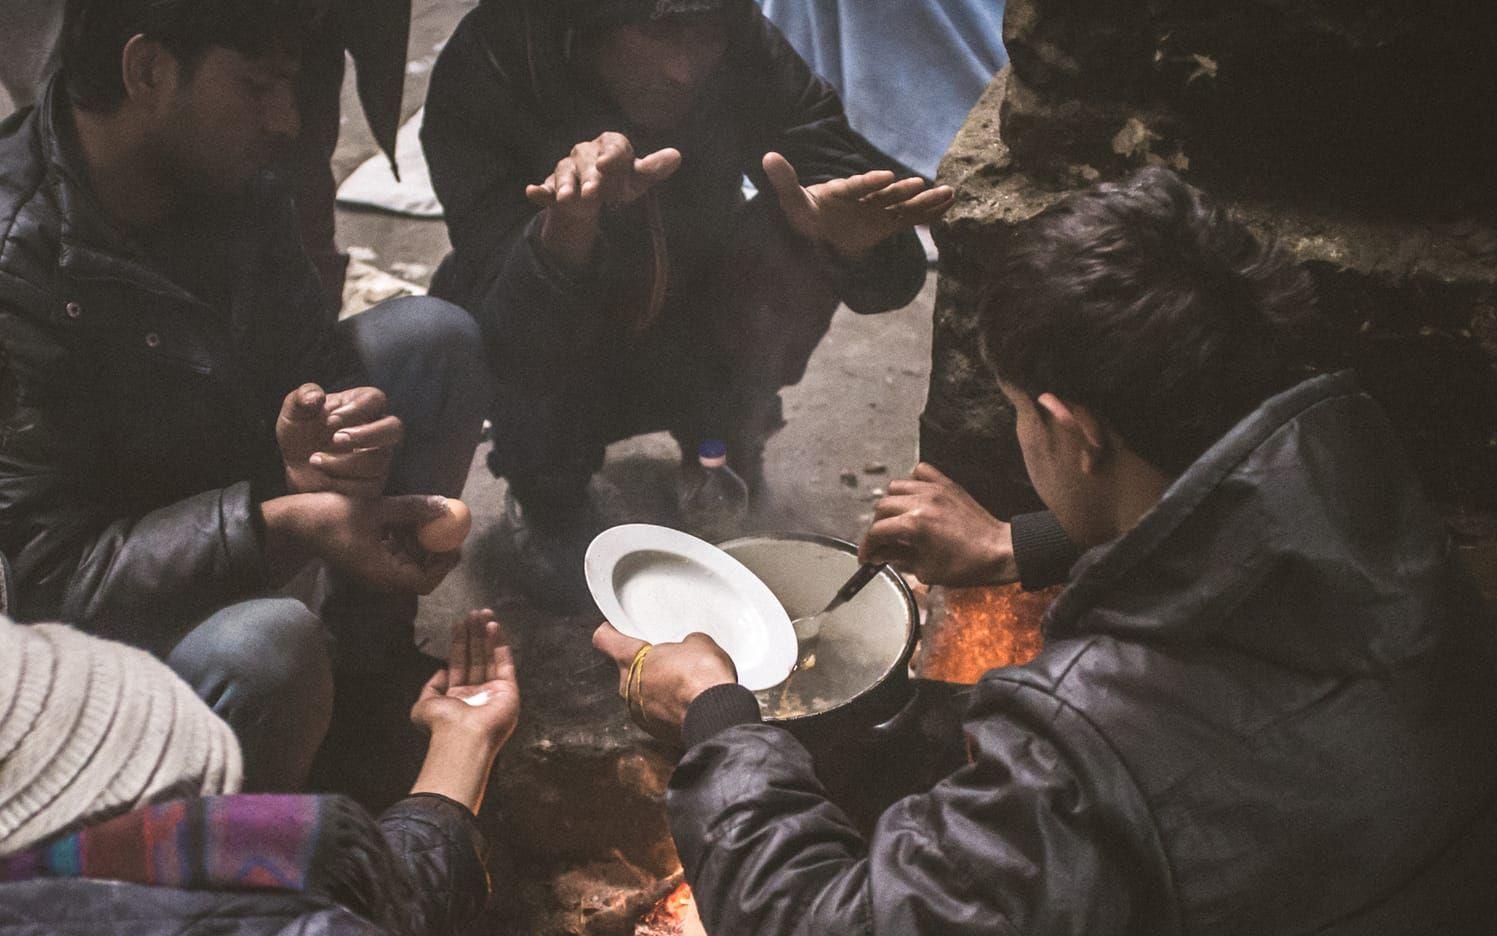 Människor lagar mat vid lägerelden i ett övergivet lager i centrala Belgrad. Bild: Igor Čoko 